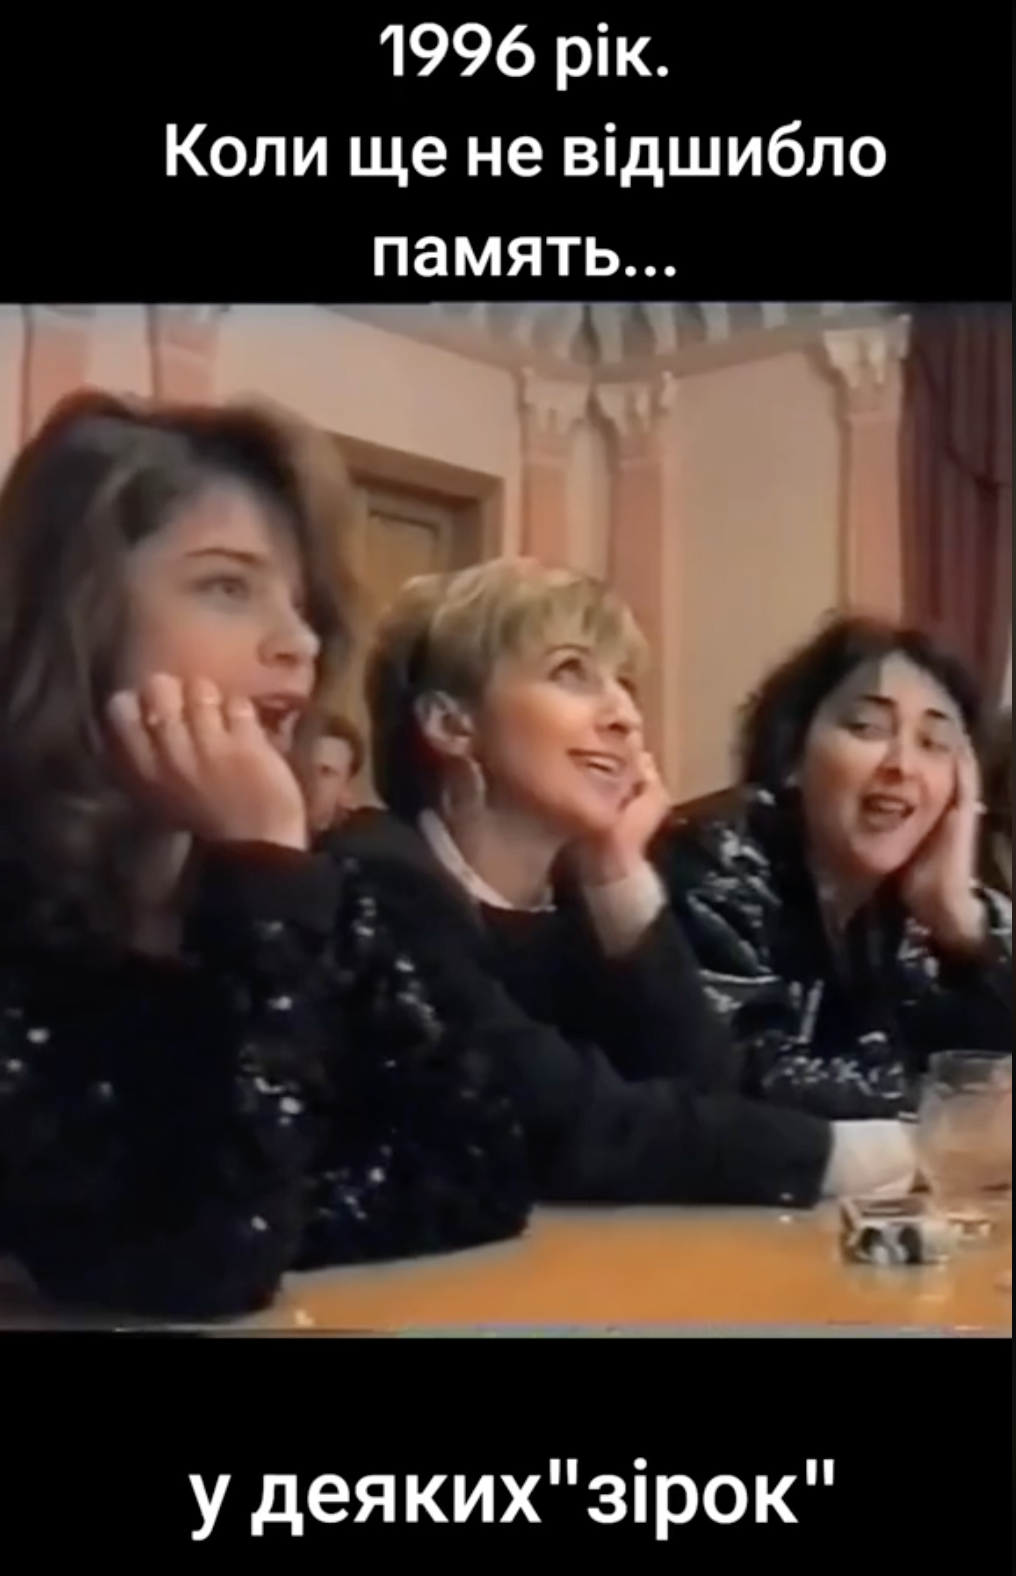 Наташа Королева, Татьяна Овсиенко и Лолита поют на украинском "Ой у гаю при Дунаю": в сети сплыло архивное видео